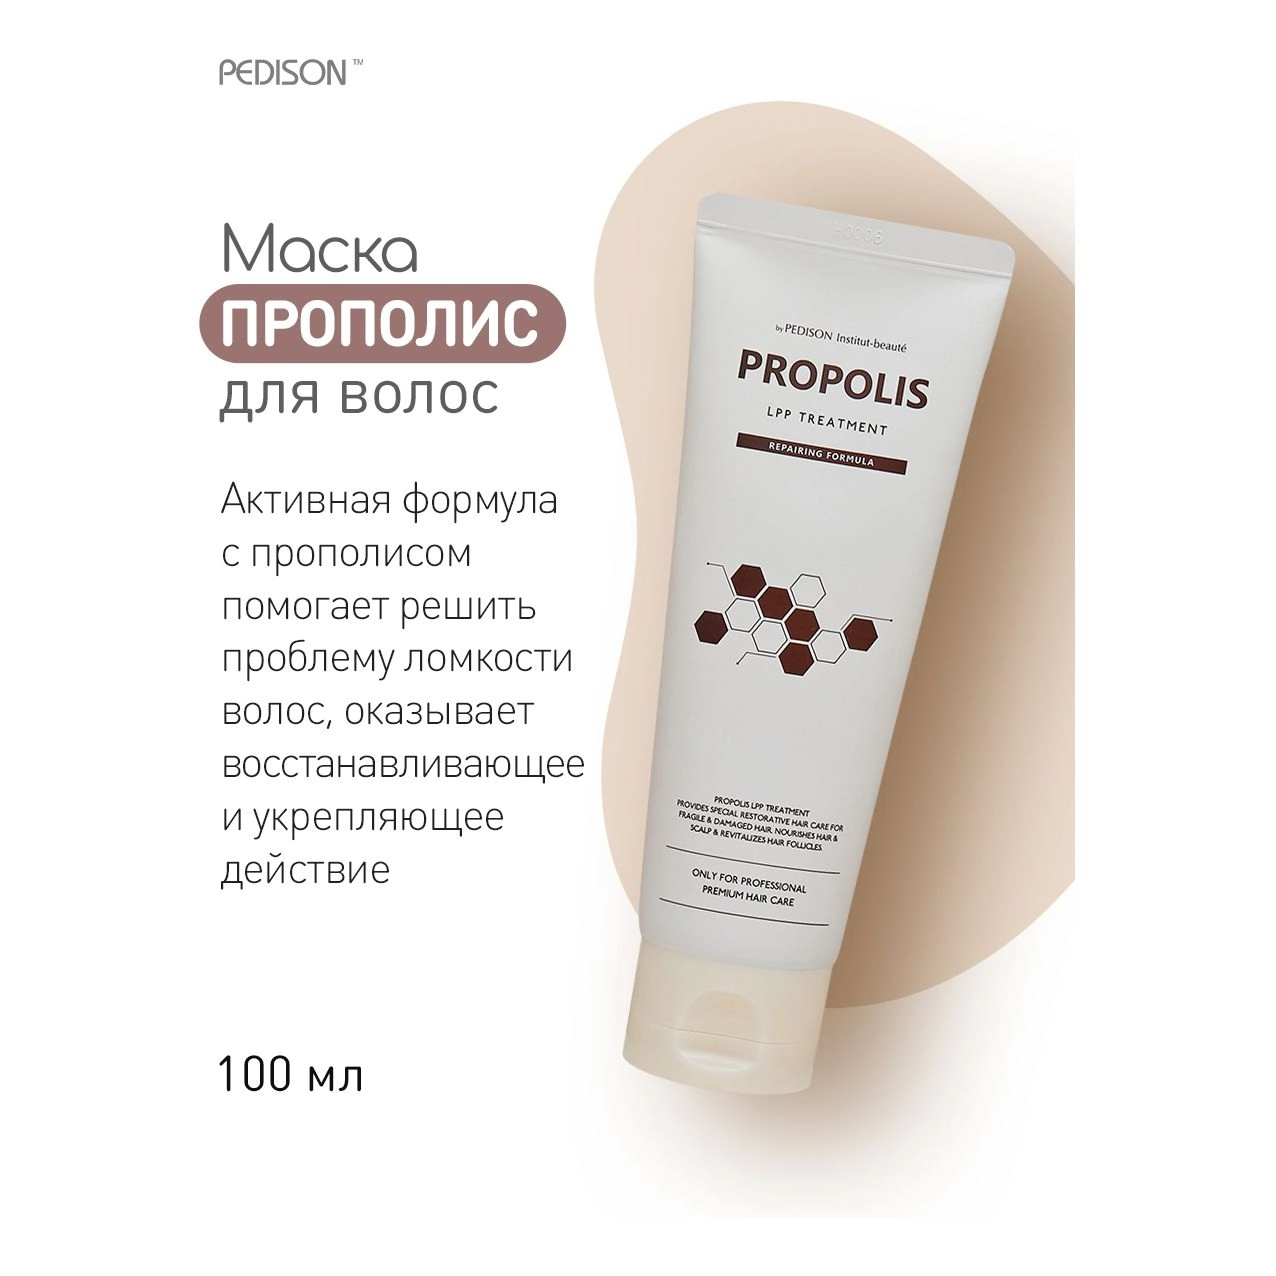 Маска для волос Прополис - Pedison Institut-Beaute Propolis LPP Treatment, 100 мл - фото N4